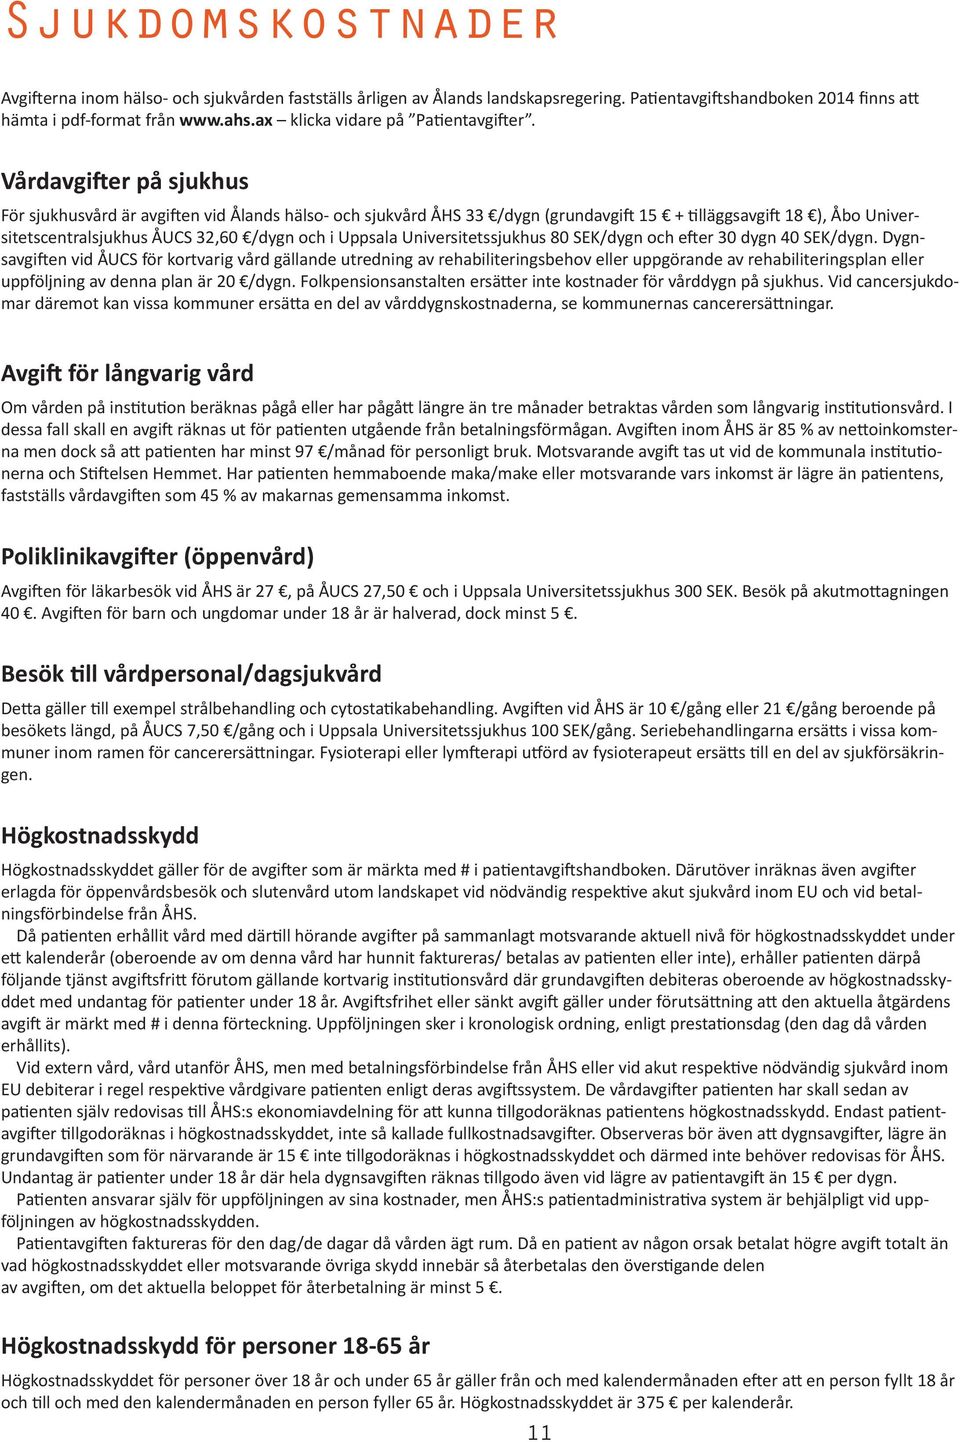 Vårdavgifter på sjukhus För sjukhusvård är avgiften vid Ålands hälso- och sjukvård ÅHS 33 /dygn (grundavgift 15 + tilläggsavgift 18 ), Åbo Universitetscentralsjukhus ÅUCS 32,60 /dygn och i Uppsala